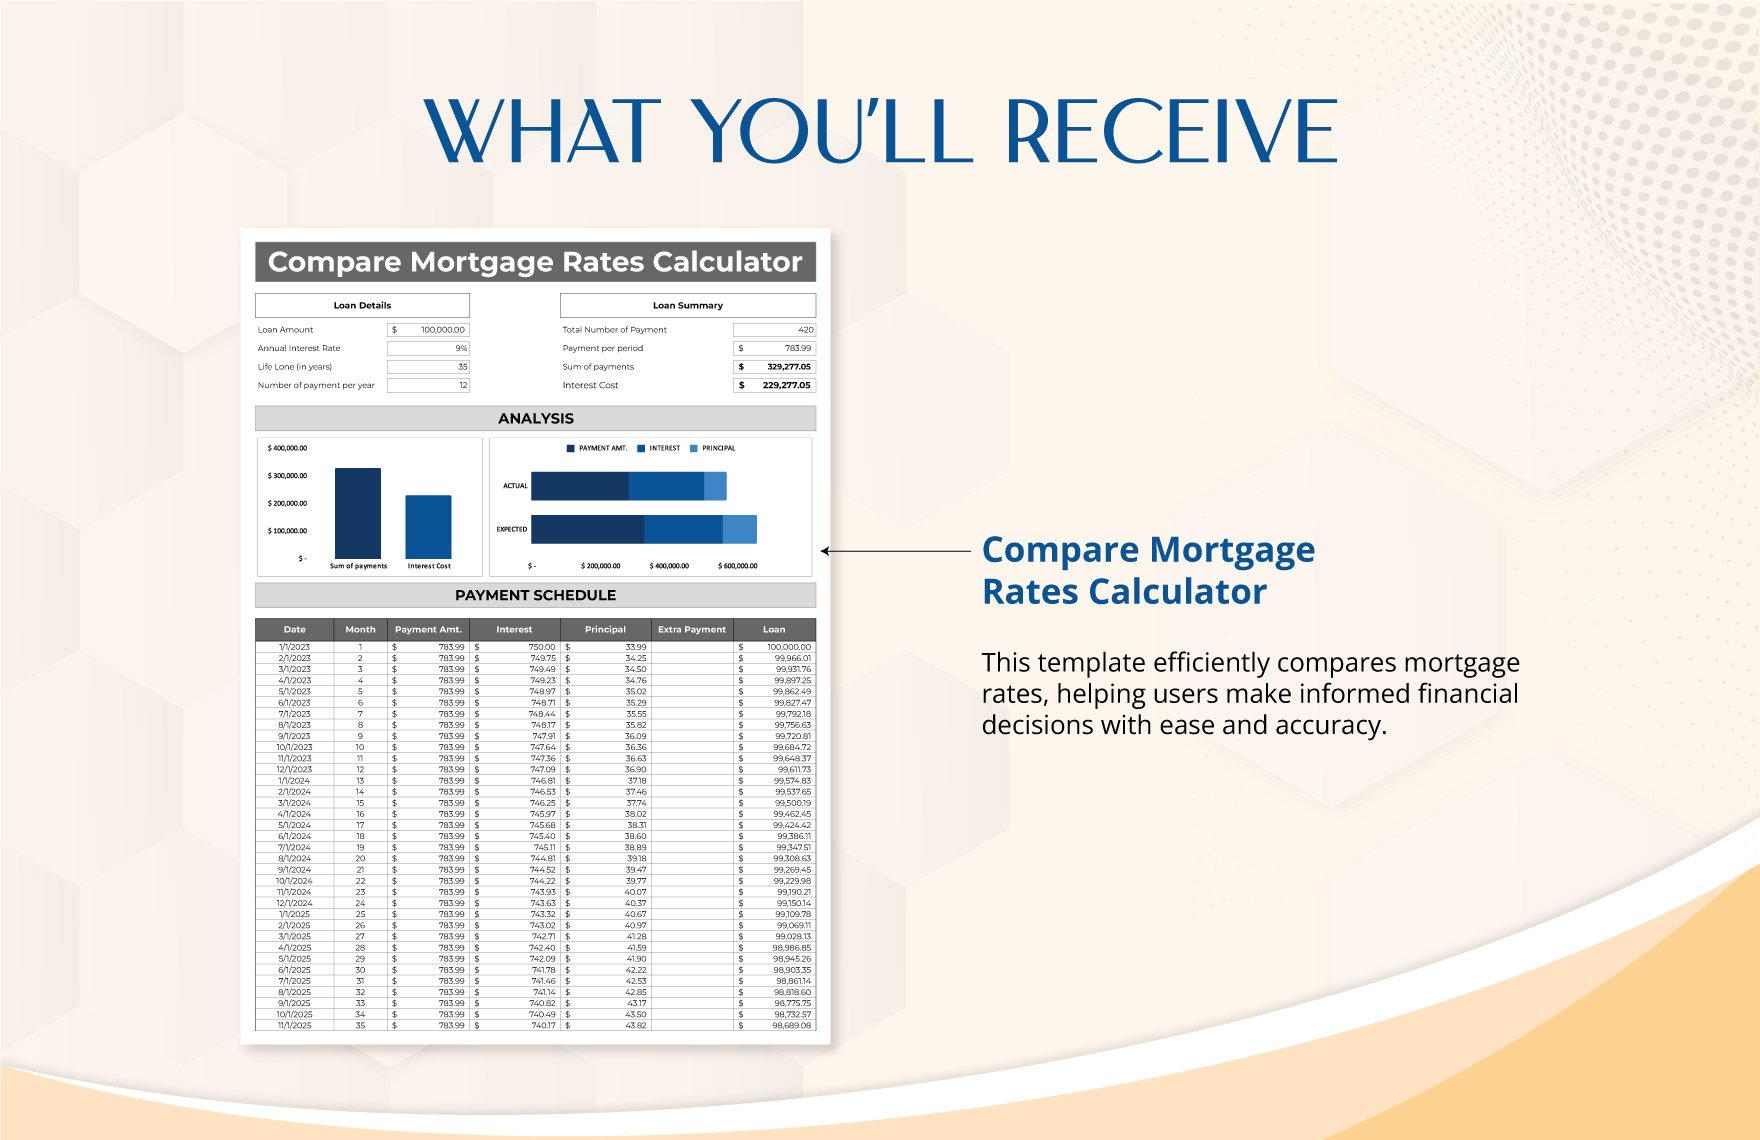 Compare Mortgage Rates Calculator